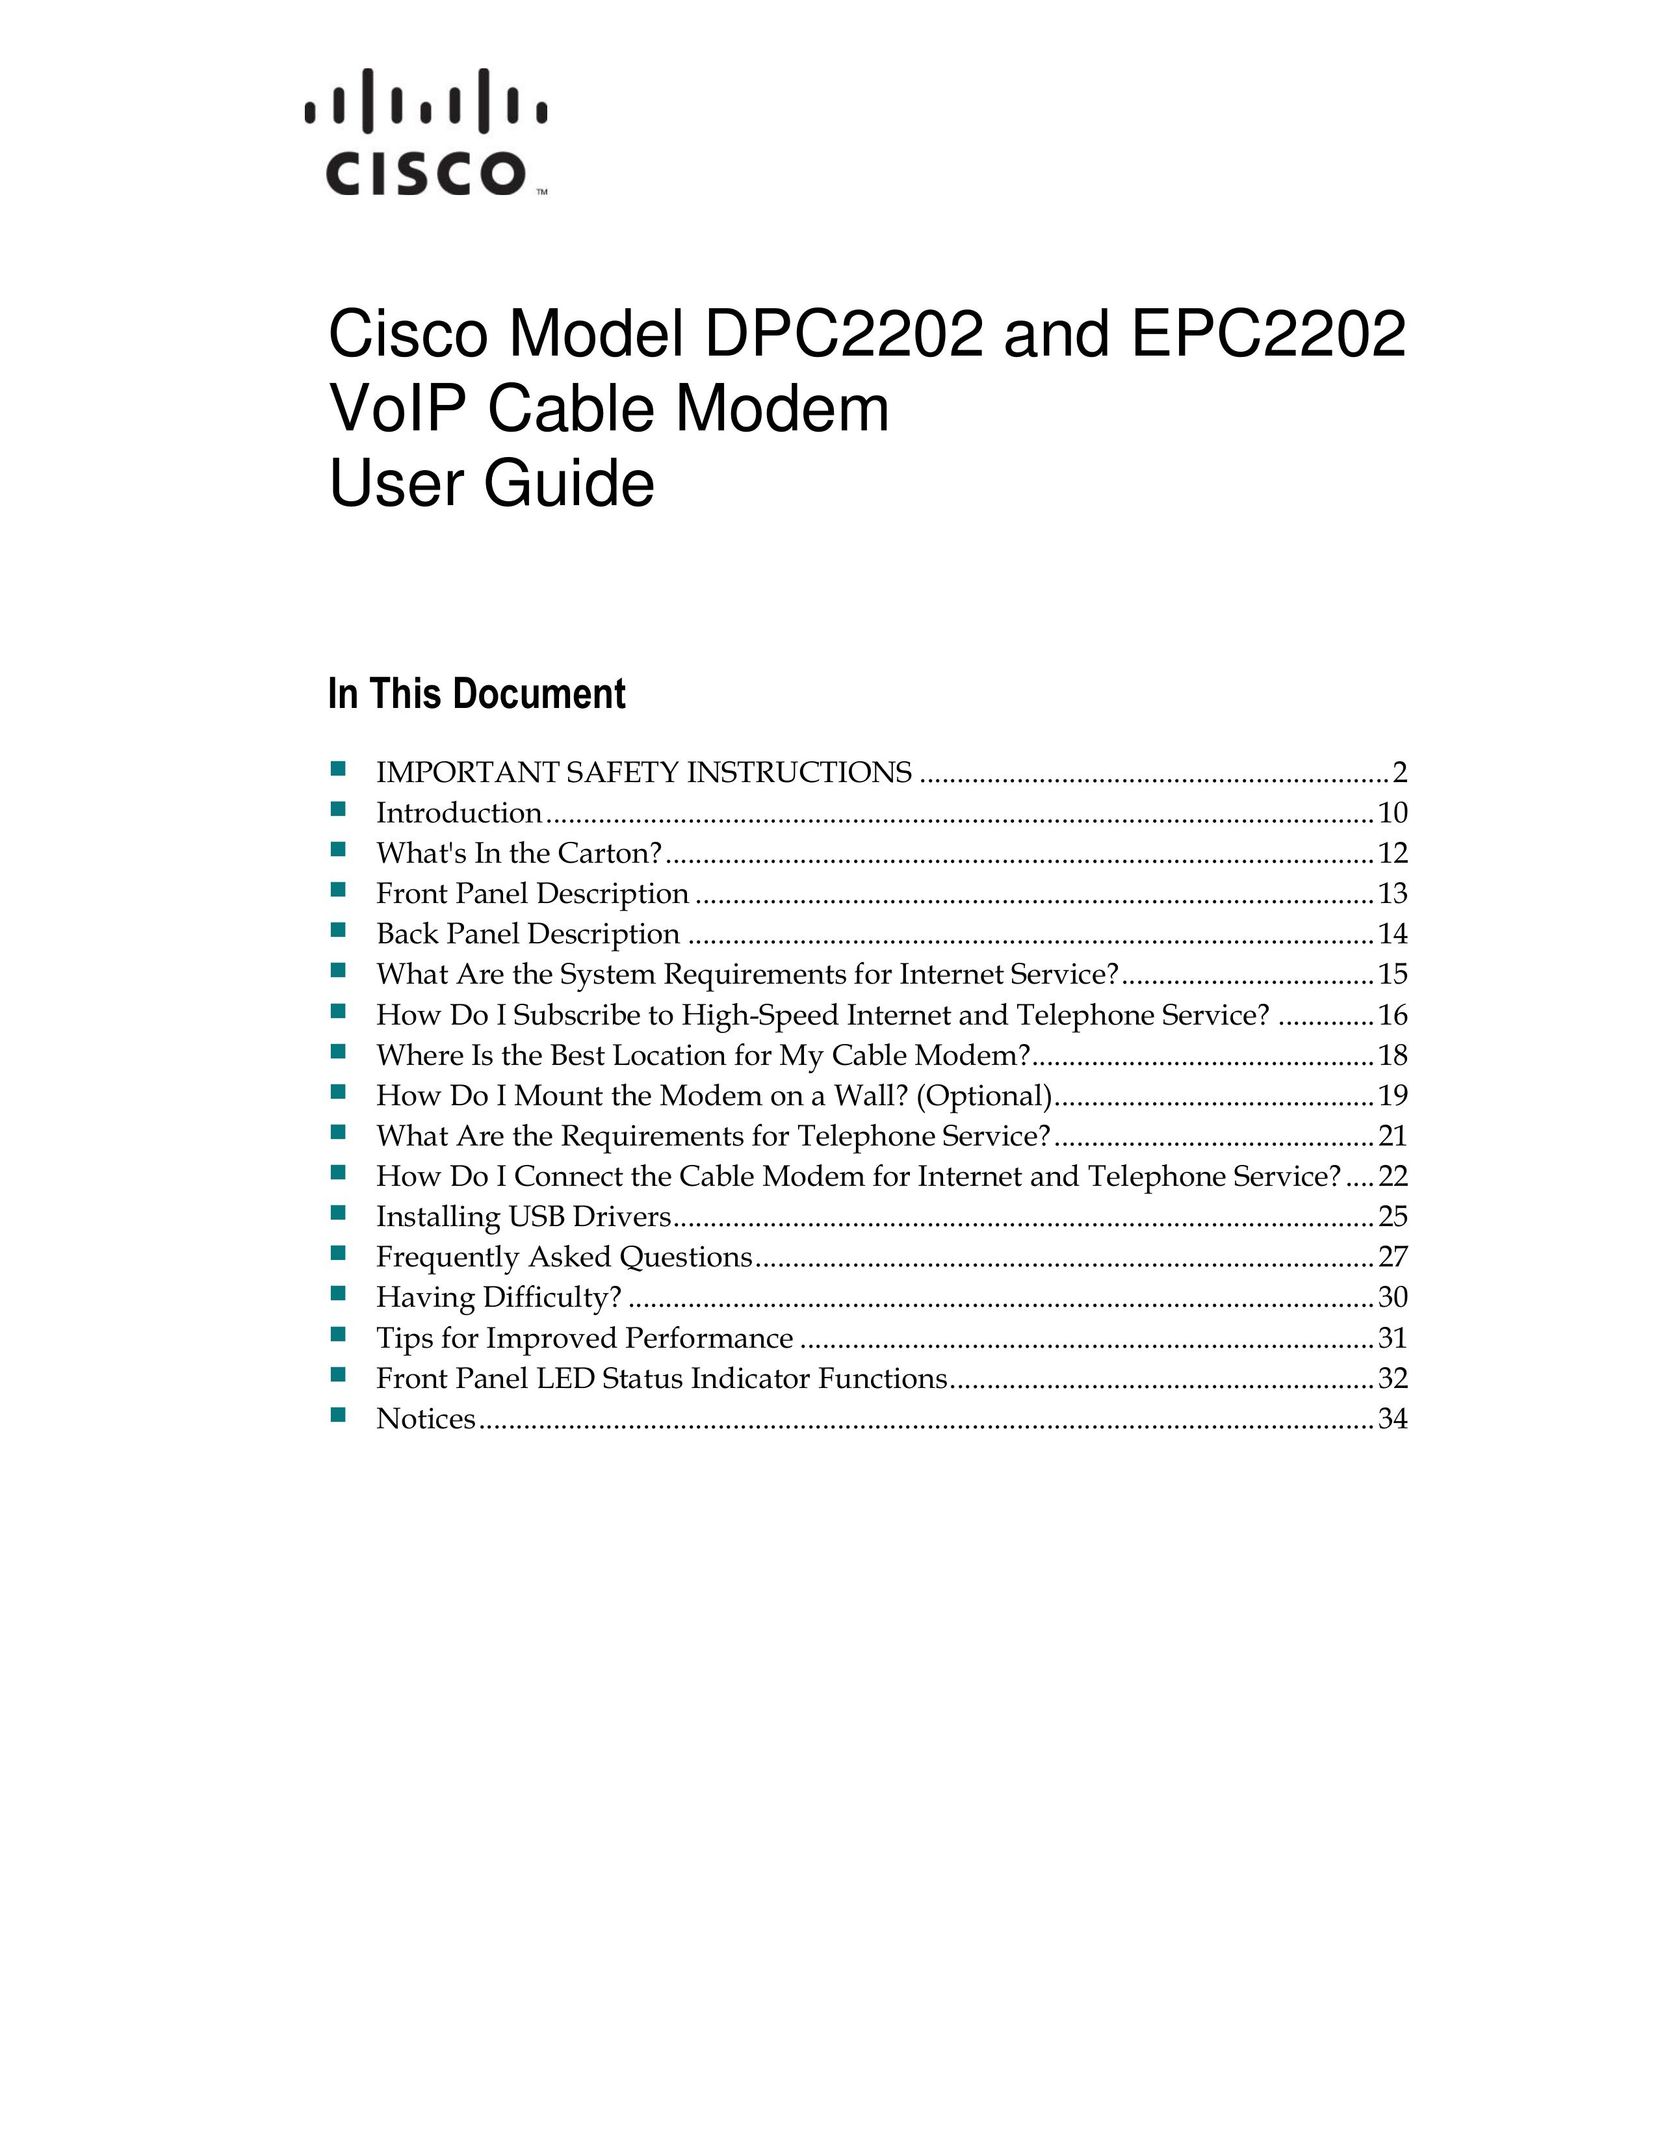 Cisco Systems DPC2202 Modem User Manual